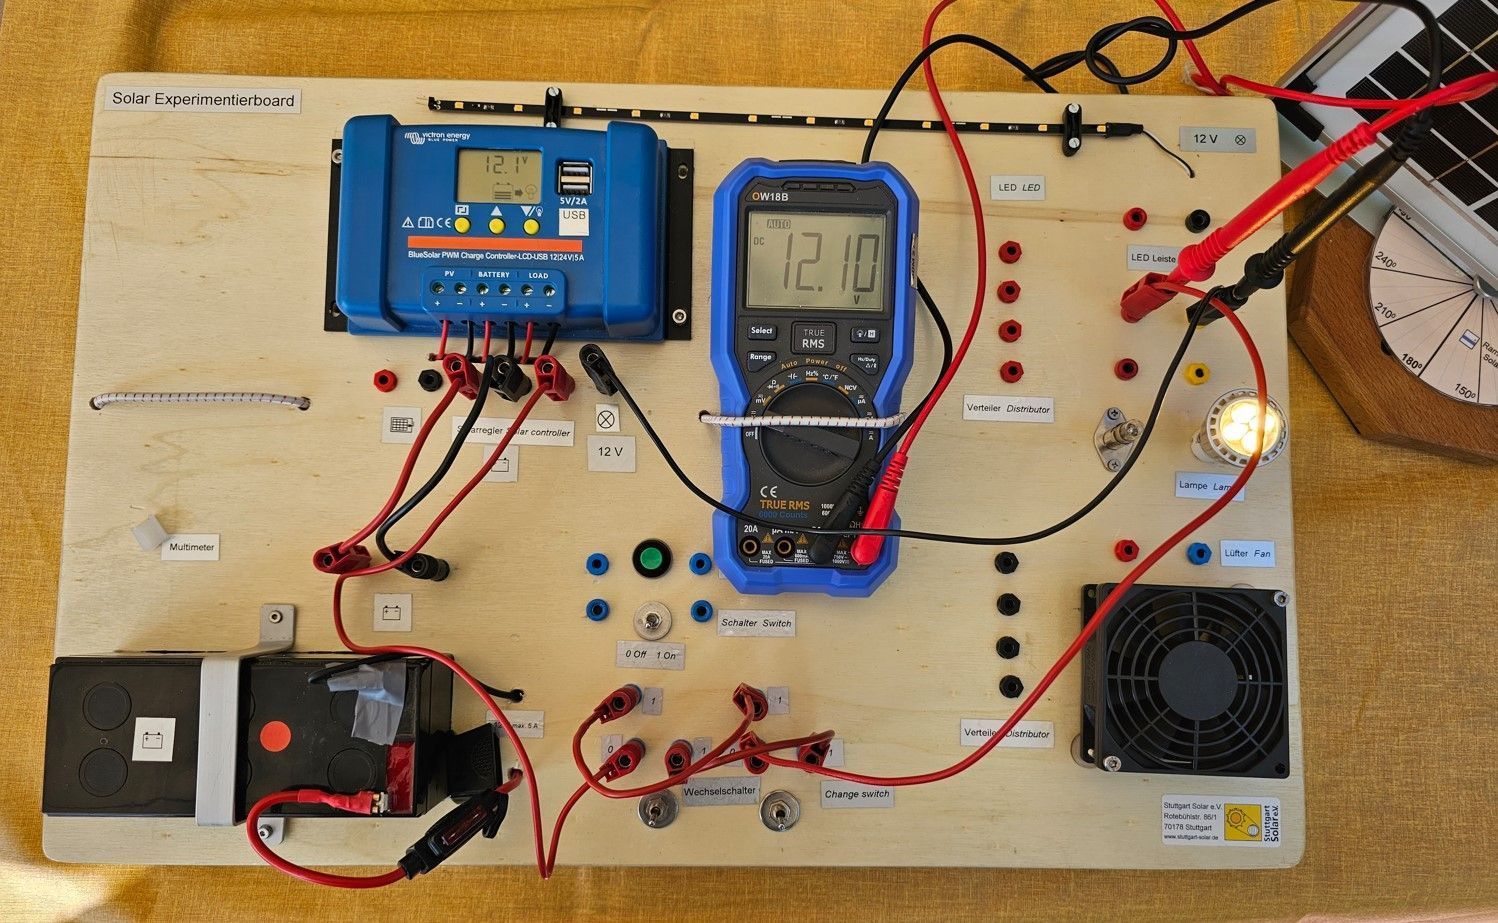 Das Bild zeigt ein Solar Experimentierboard mit diversen elektronischen Bauteilen.